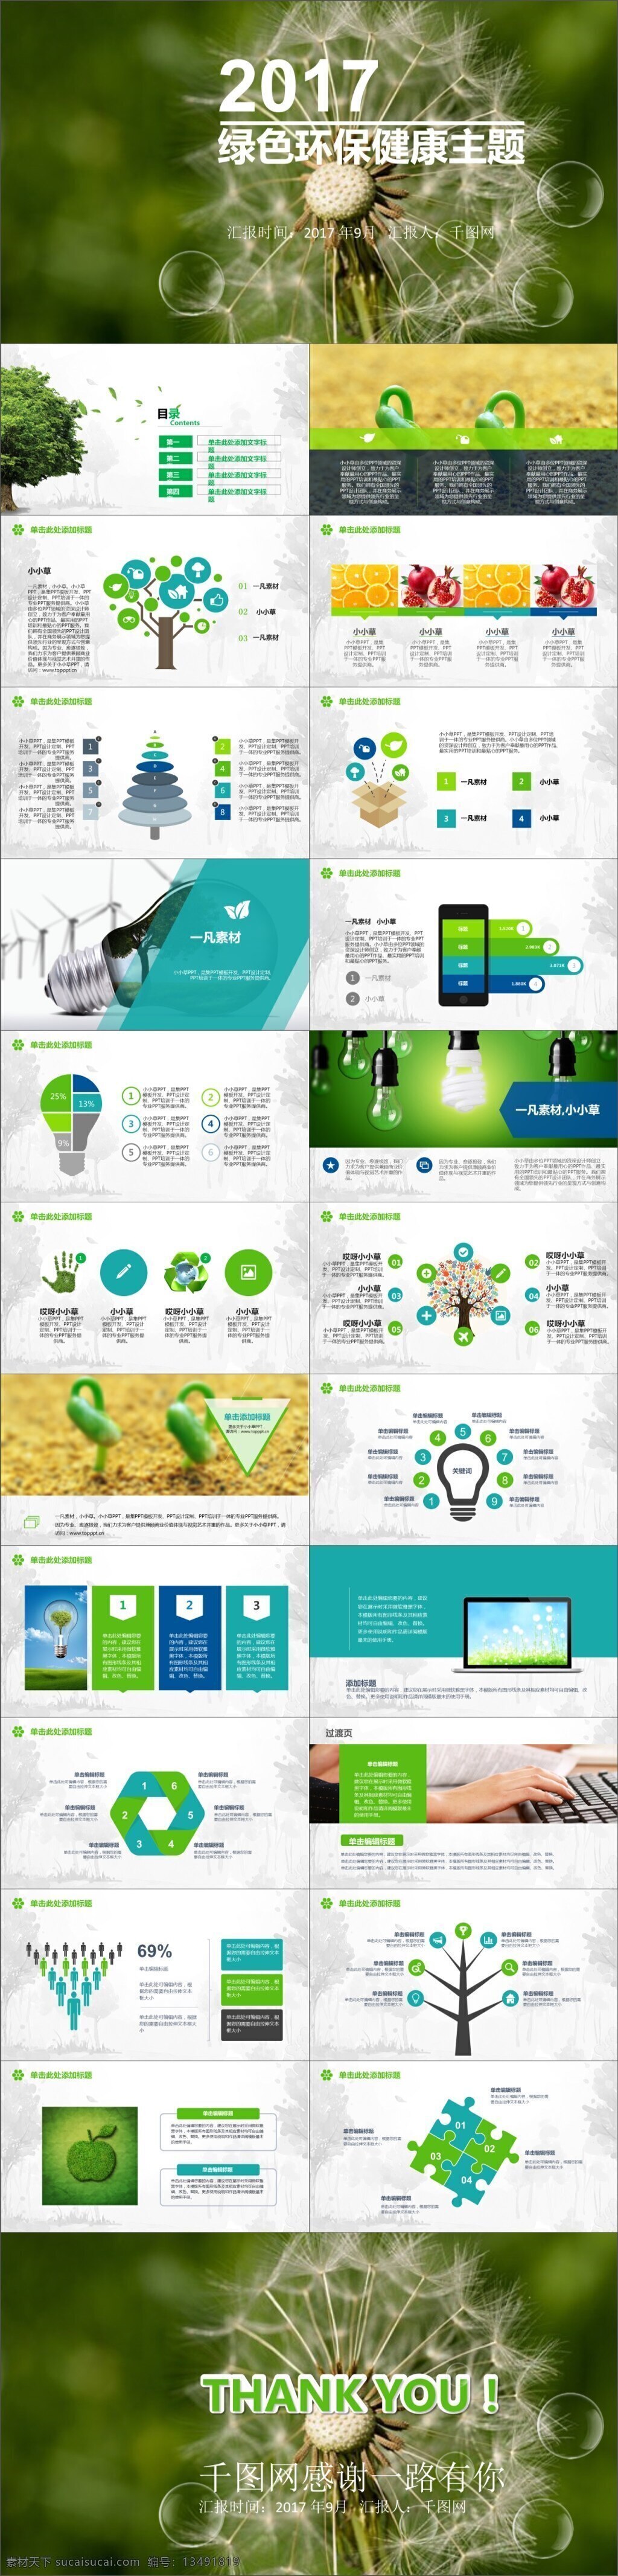 绿色环保 主题 模板 绿色 环保 公益 宣传 简约 ppt模板